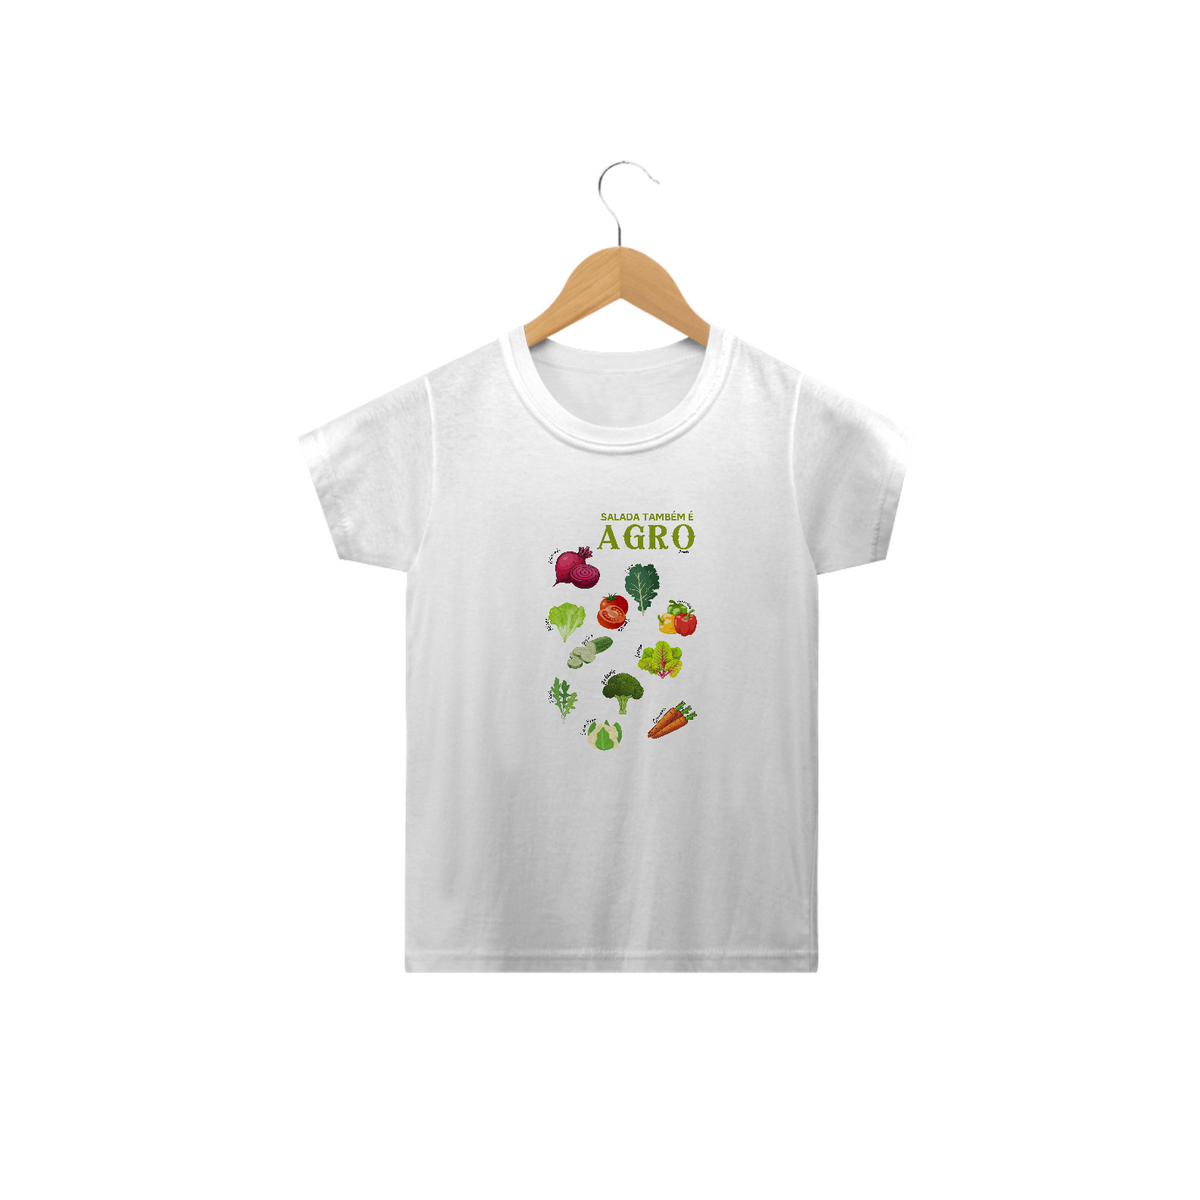 Nome do produto: Camiseta Salada também é Agro - Infantil 2 a 14 A